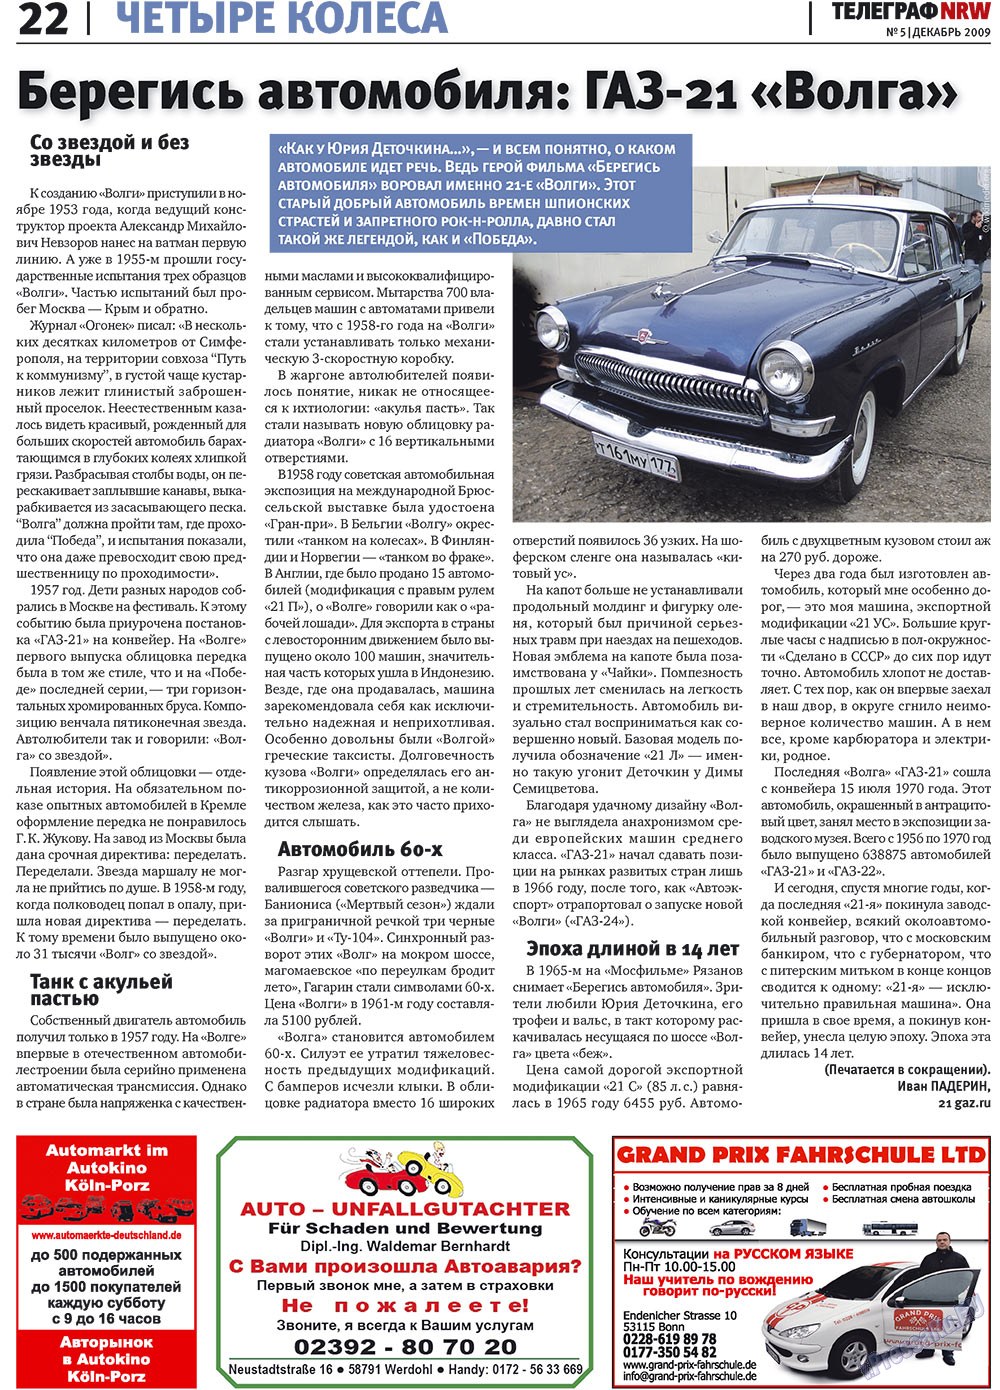 Телеграф NRW (газета). 2009 год, номер 5, стр. 22